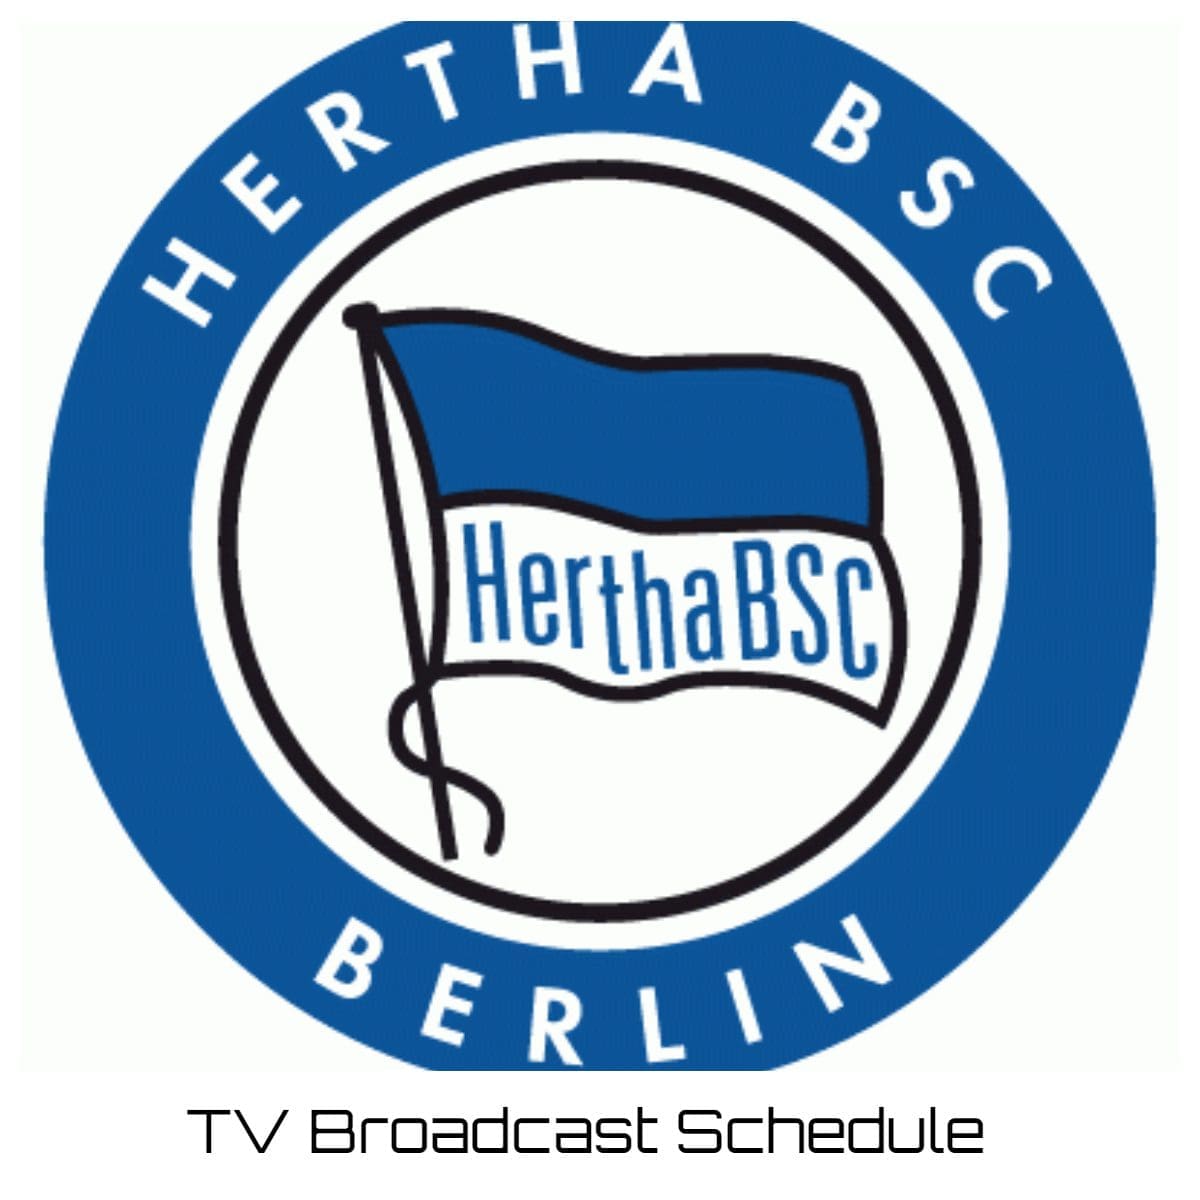 Hertha BSC TV Broadcast Schedule